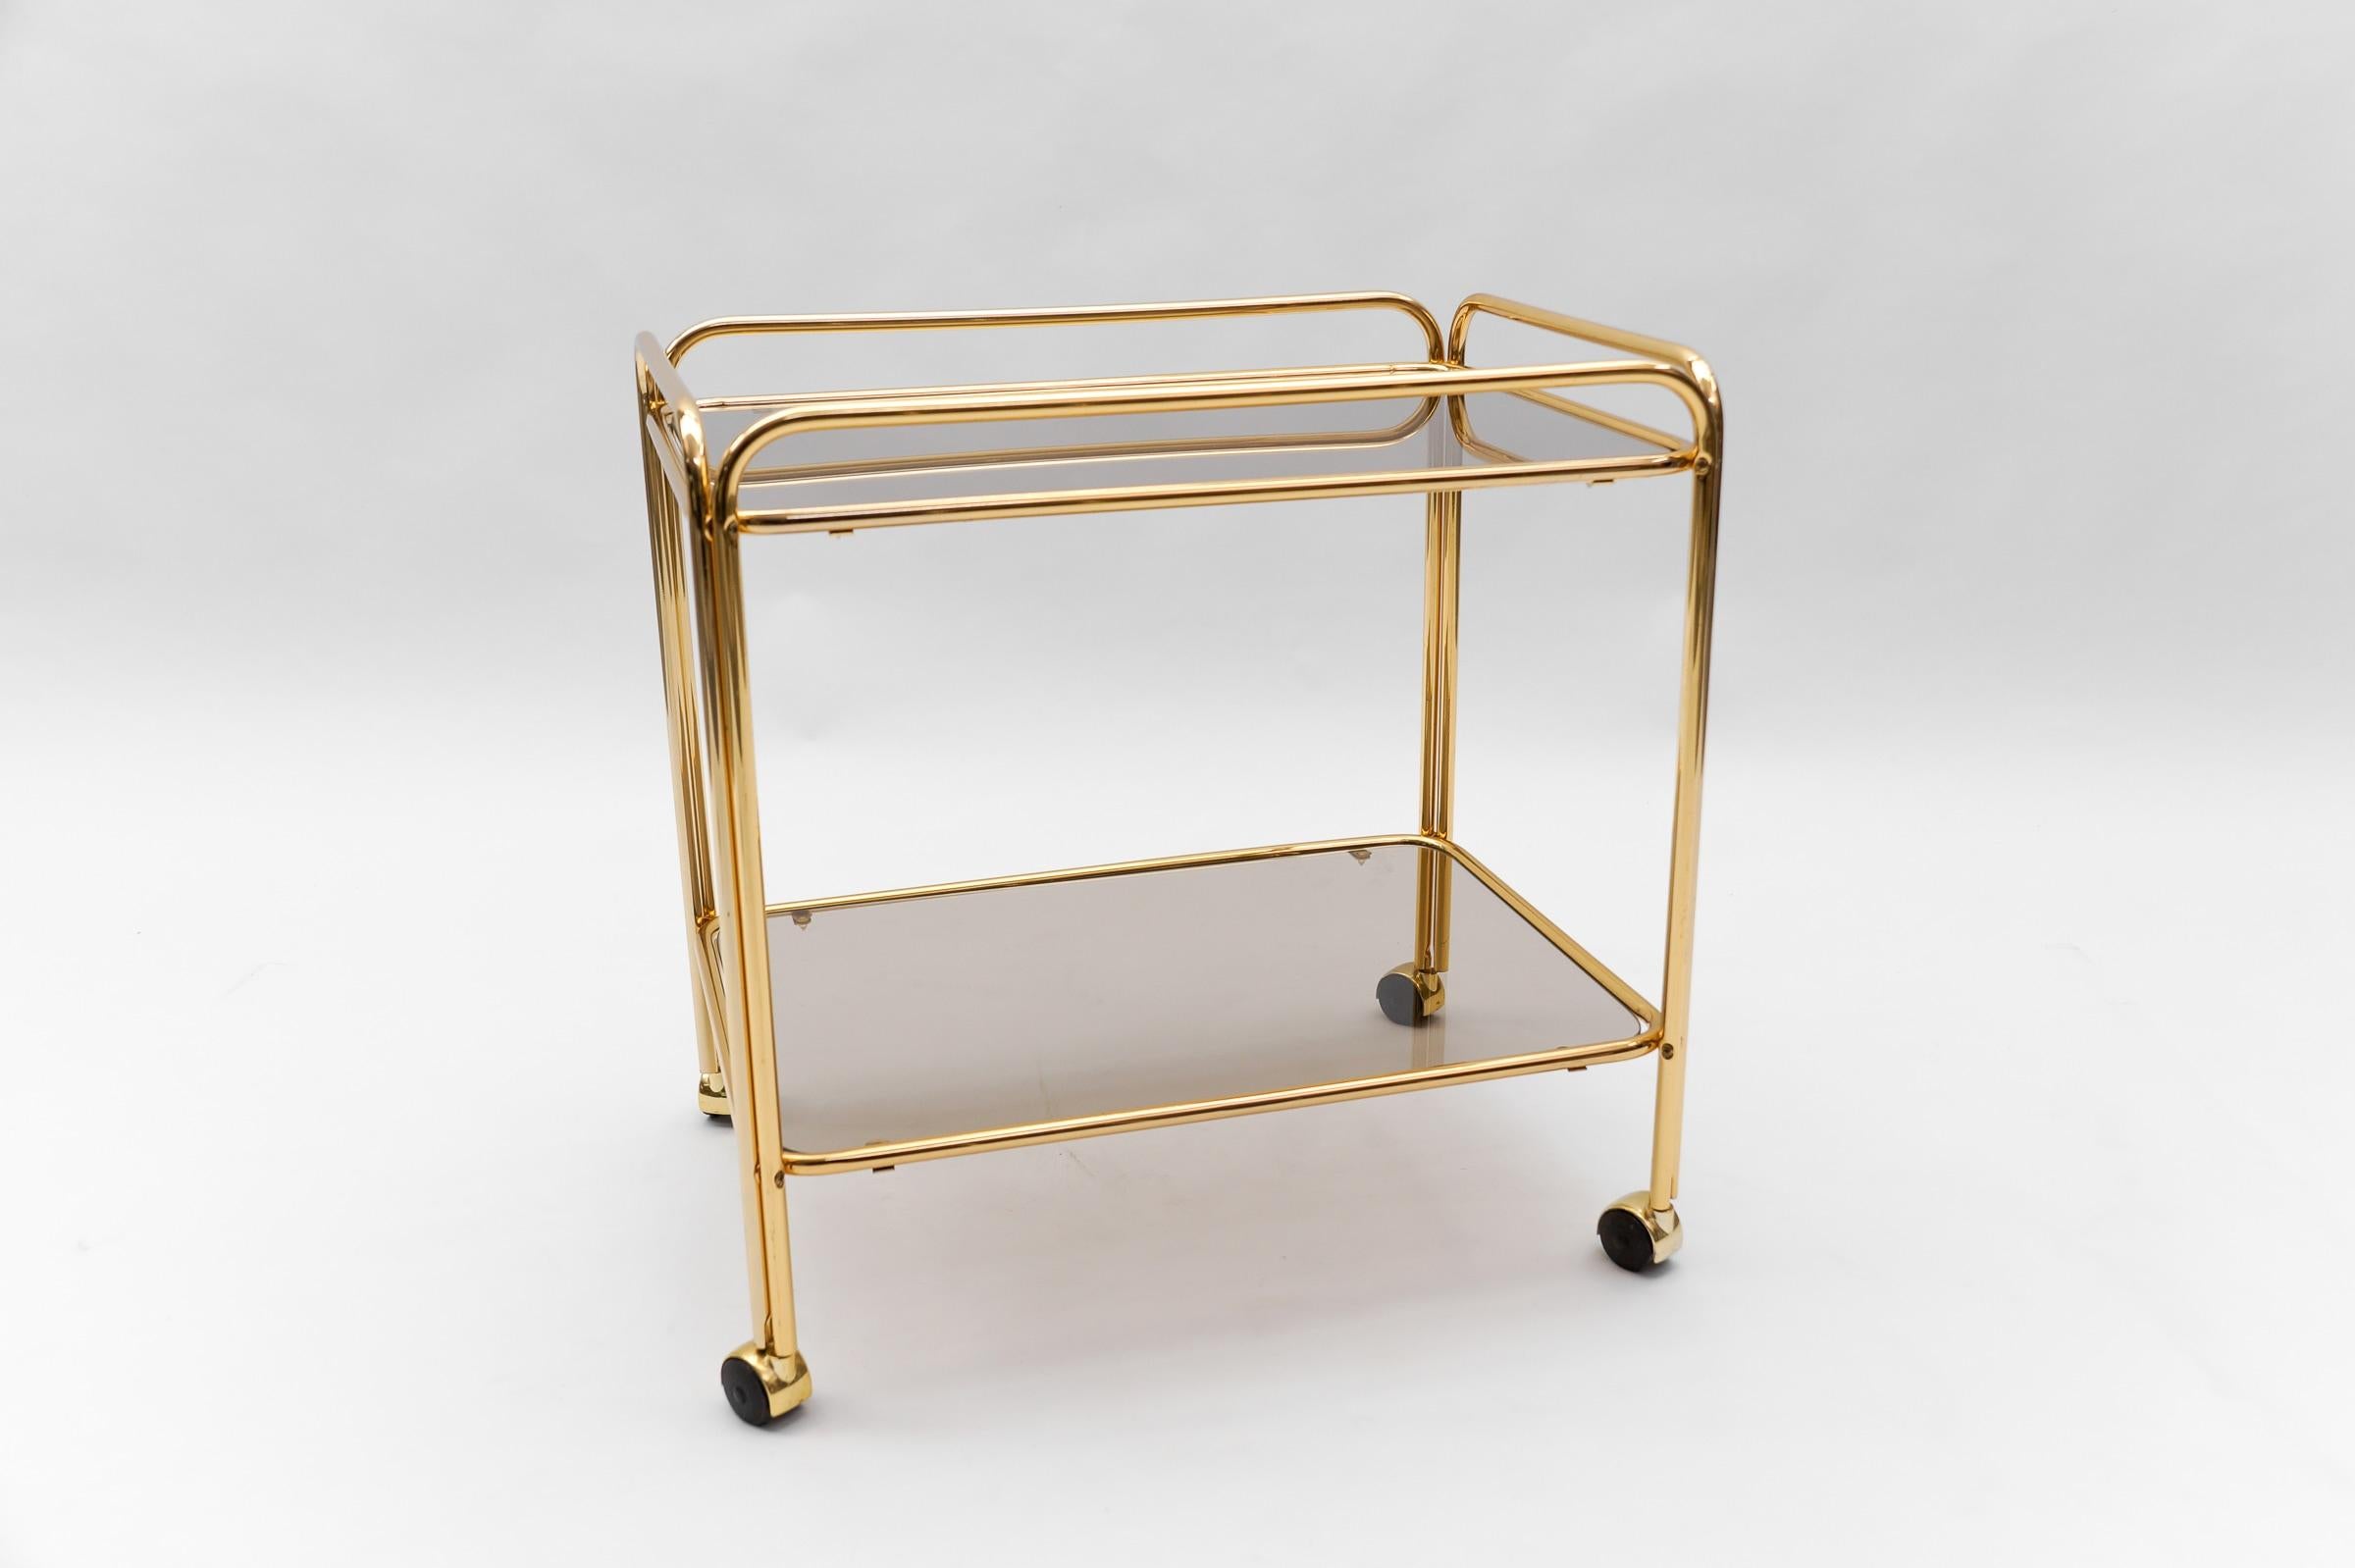  Lovely Elegant Mid-Century Modern Brass Bar Cart, 1960s, France For Sale 3